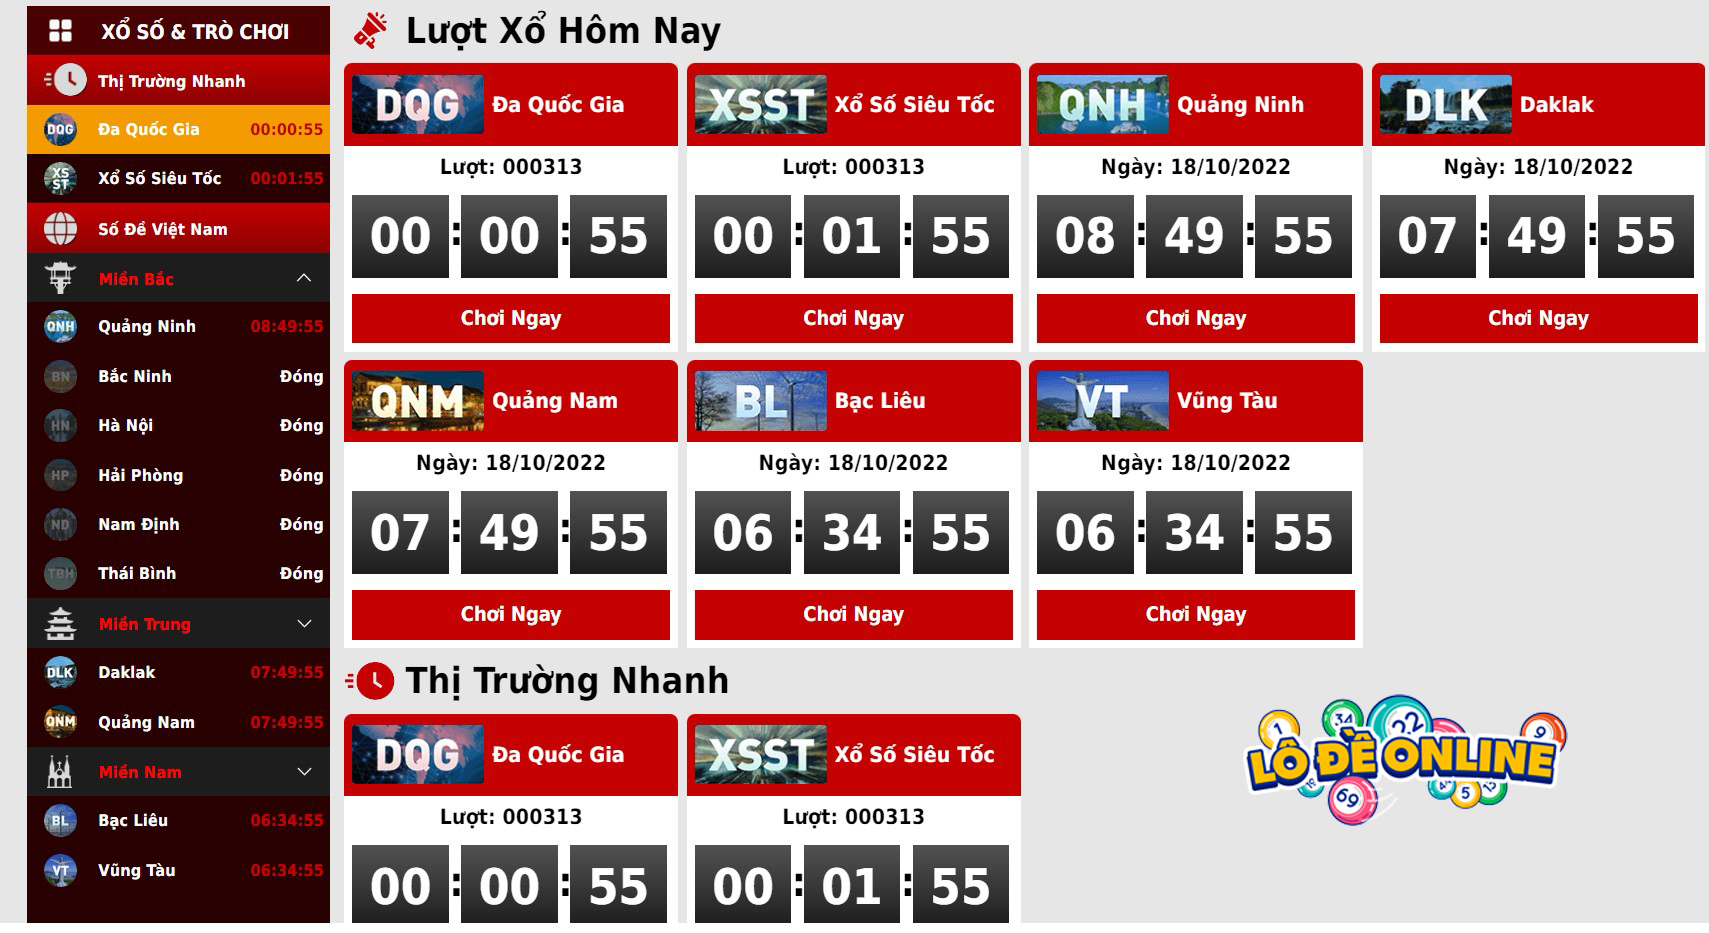 VN88 lô đề - Nhà cái cung cấp trò chơi lô đề uy tín hàng đầu Việt Nam